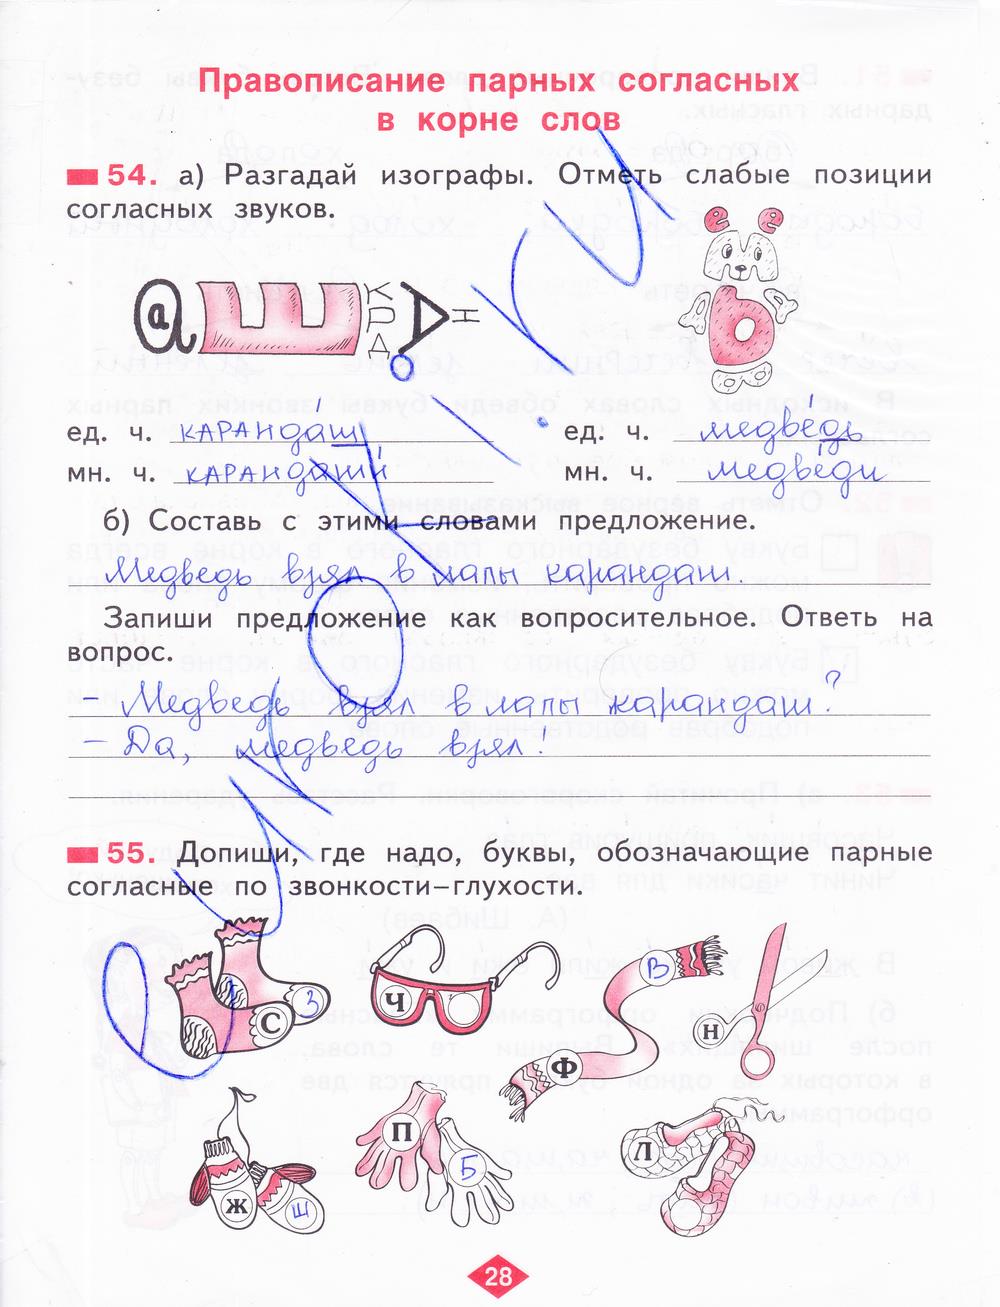 гдз 2 класс рабочая тетрадь часть 2 страница 28 русский язык Яковлева